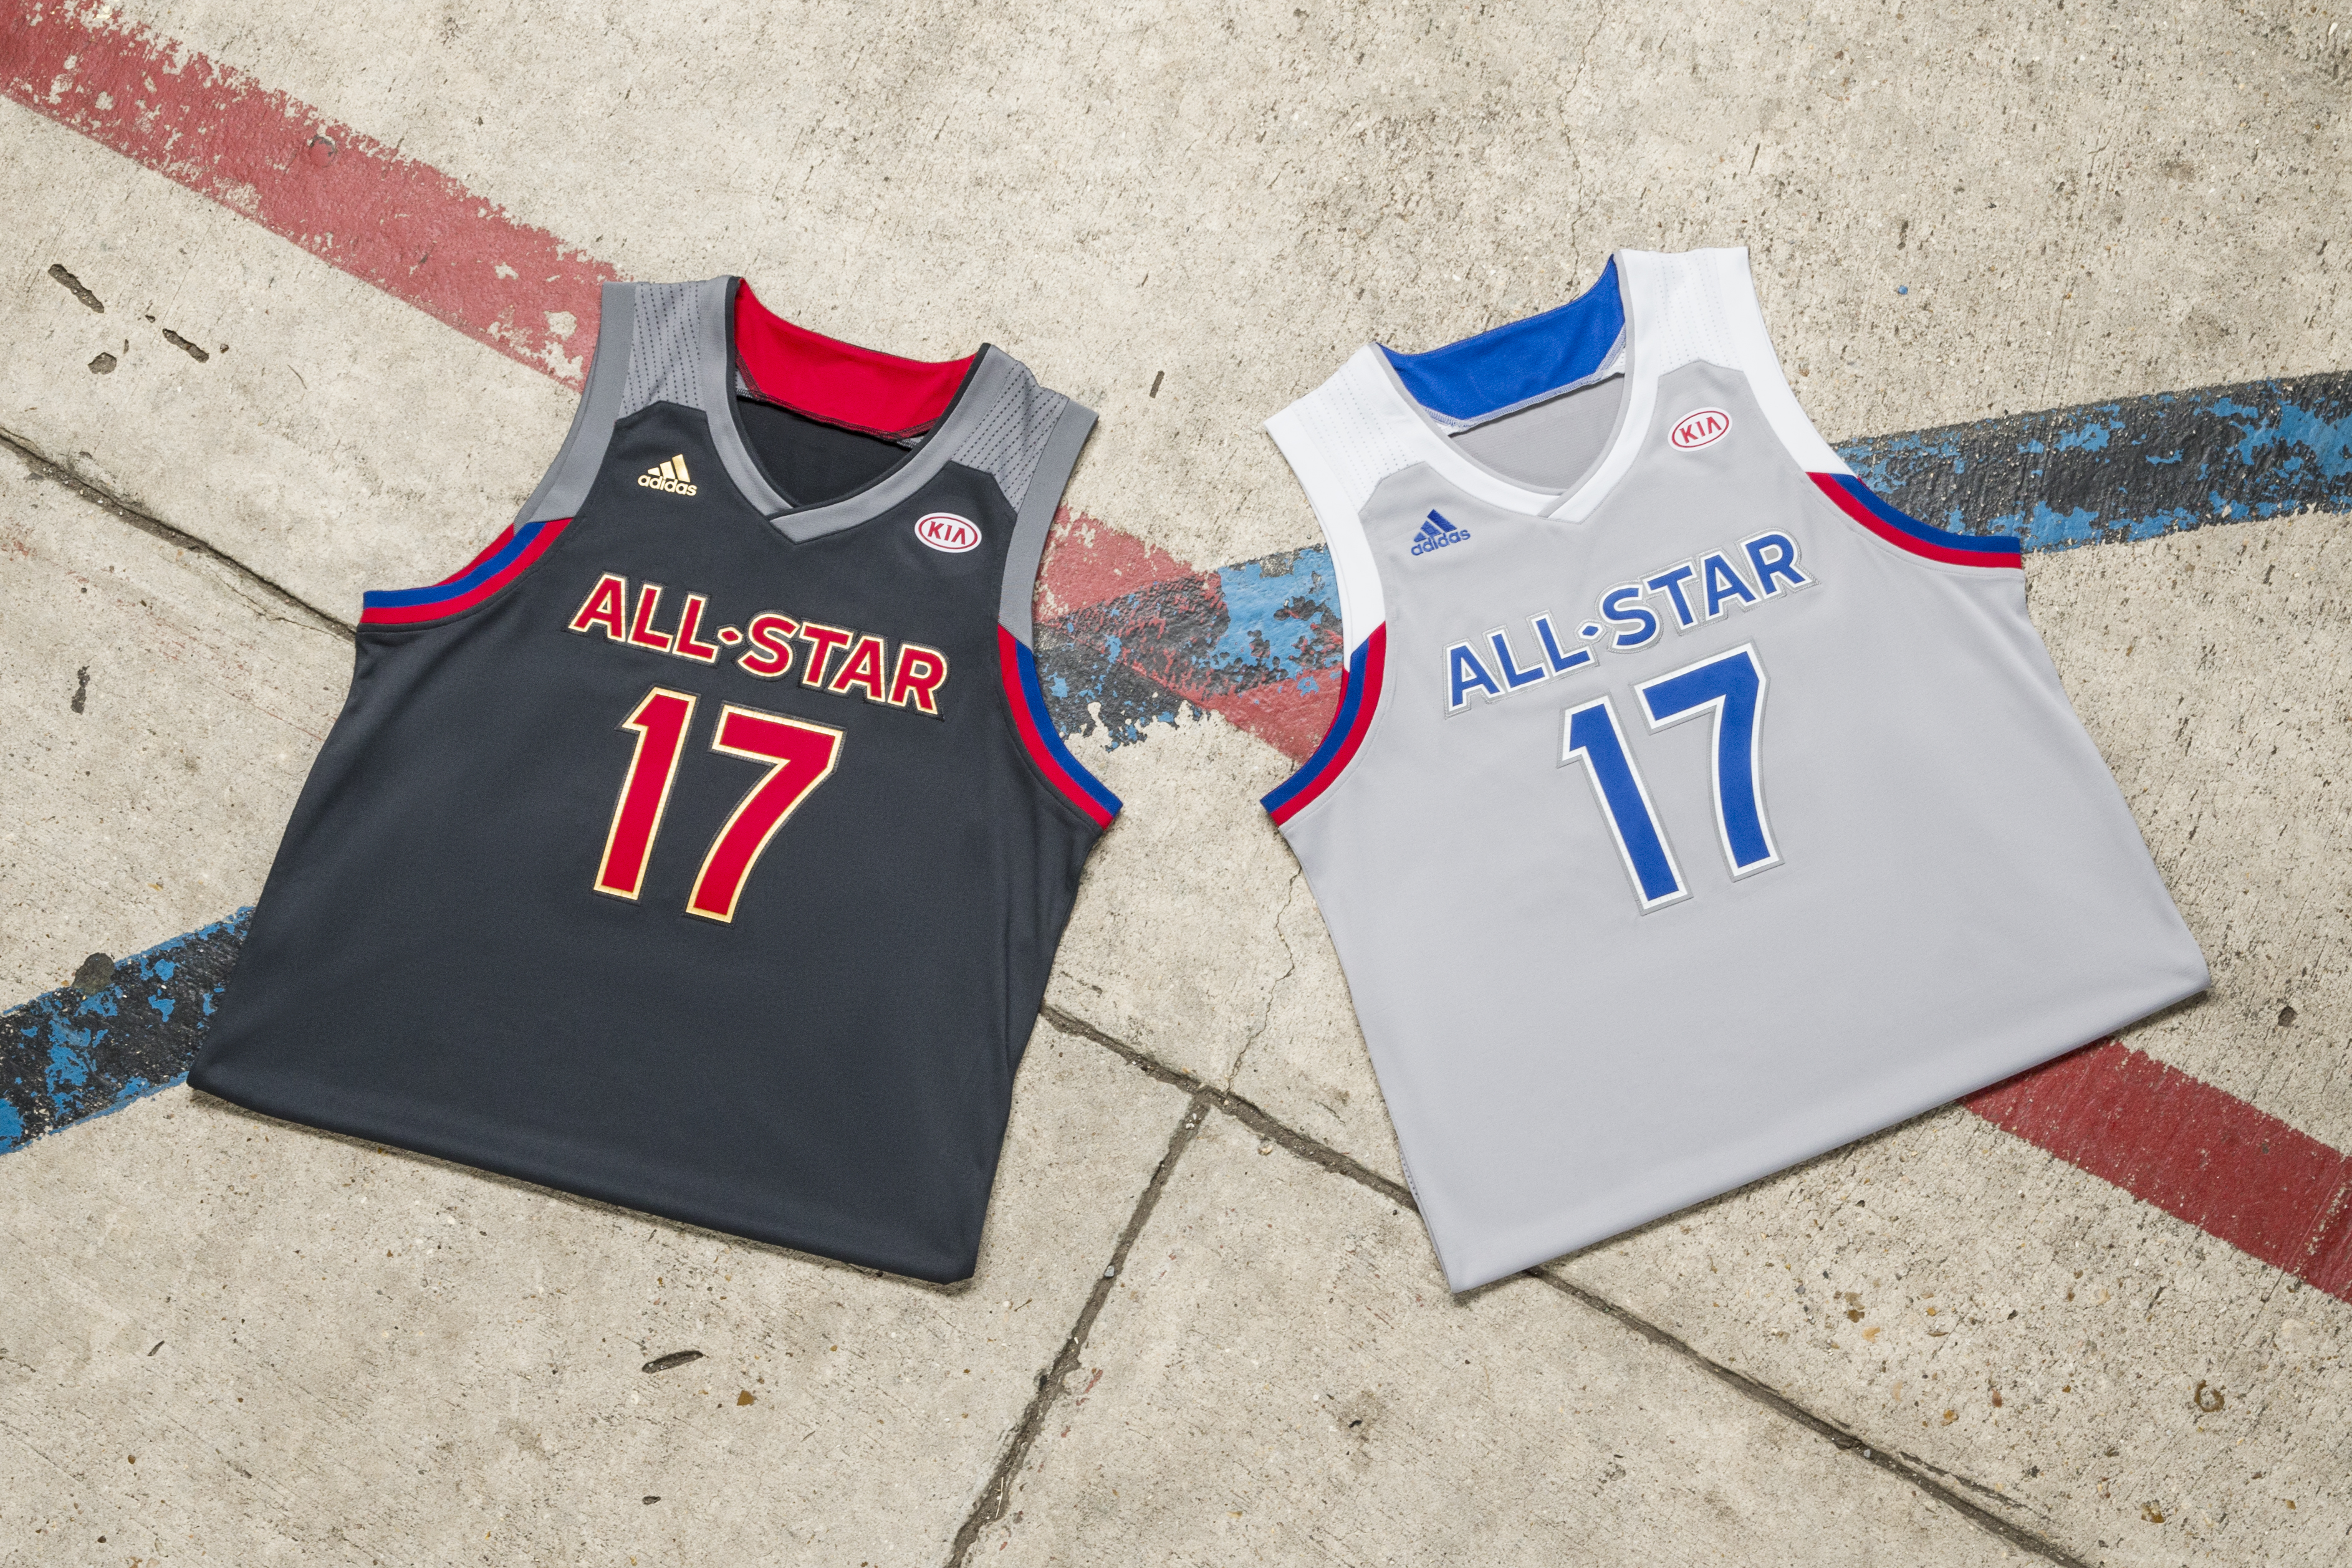 adidas dévoile ses dernières tenues pour le NBA All-Star Game 2017